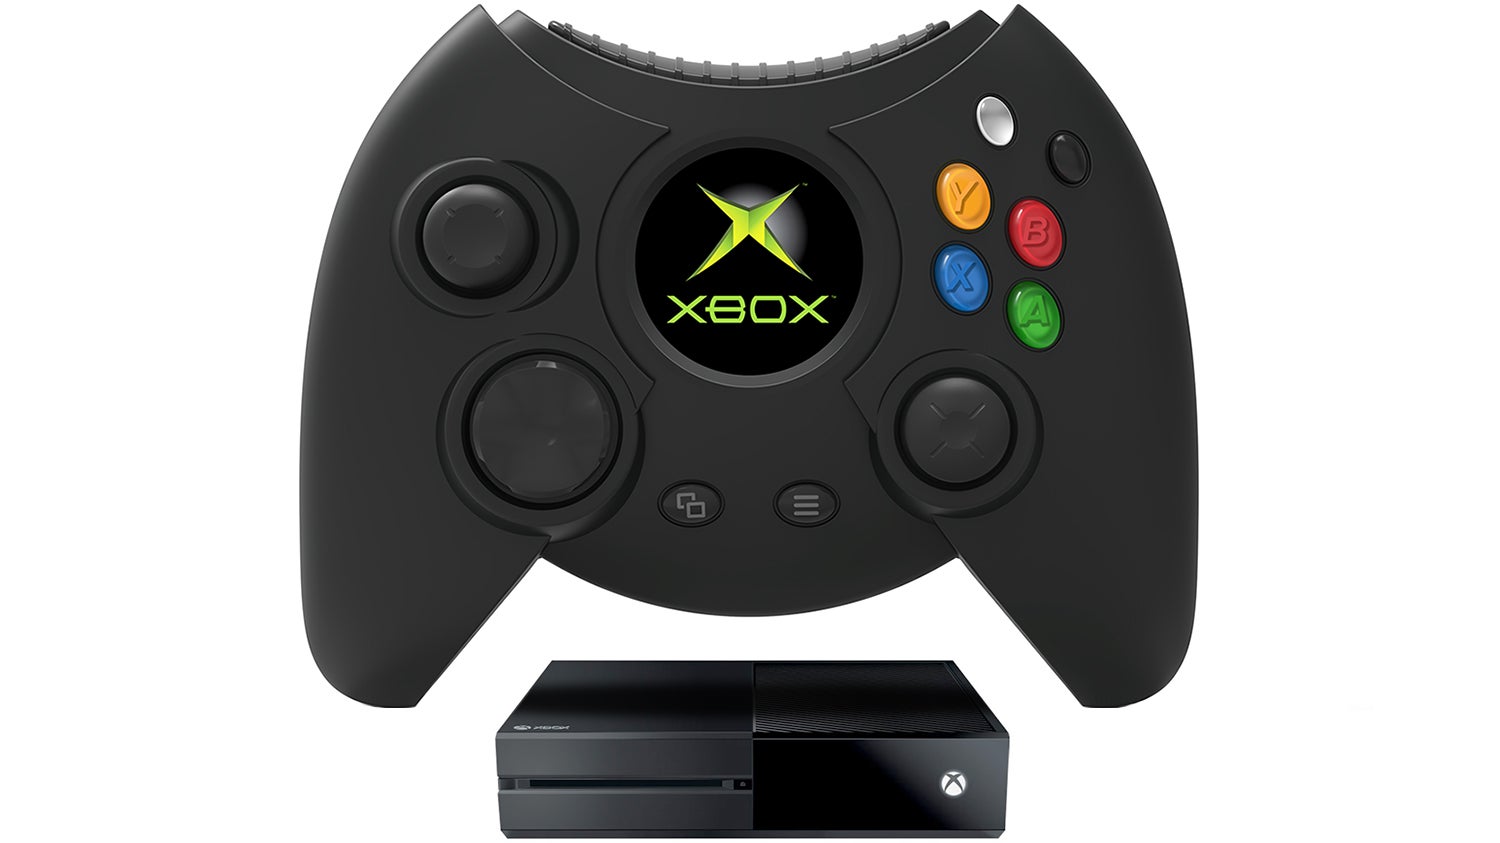 Image for Original Xbox replica controller "The Duke" revealed